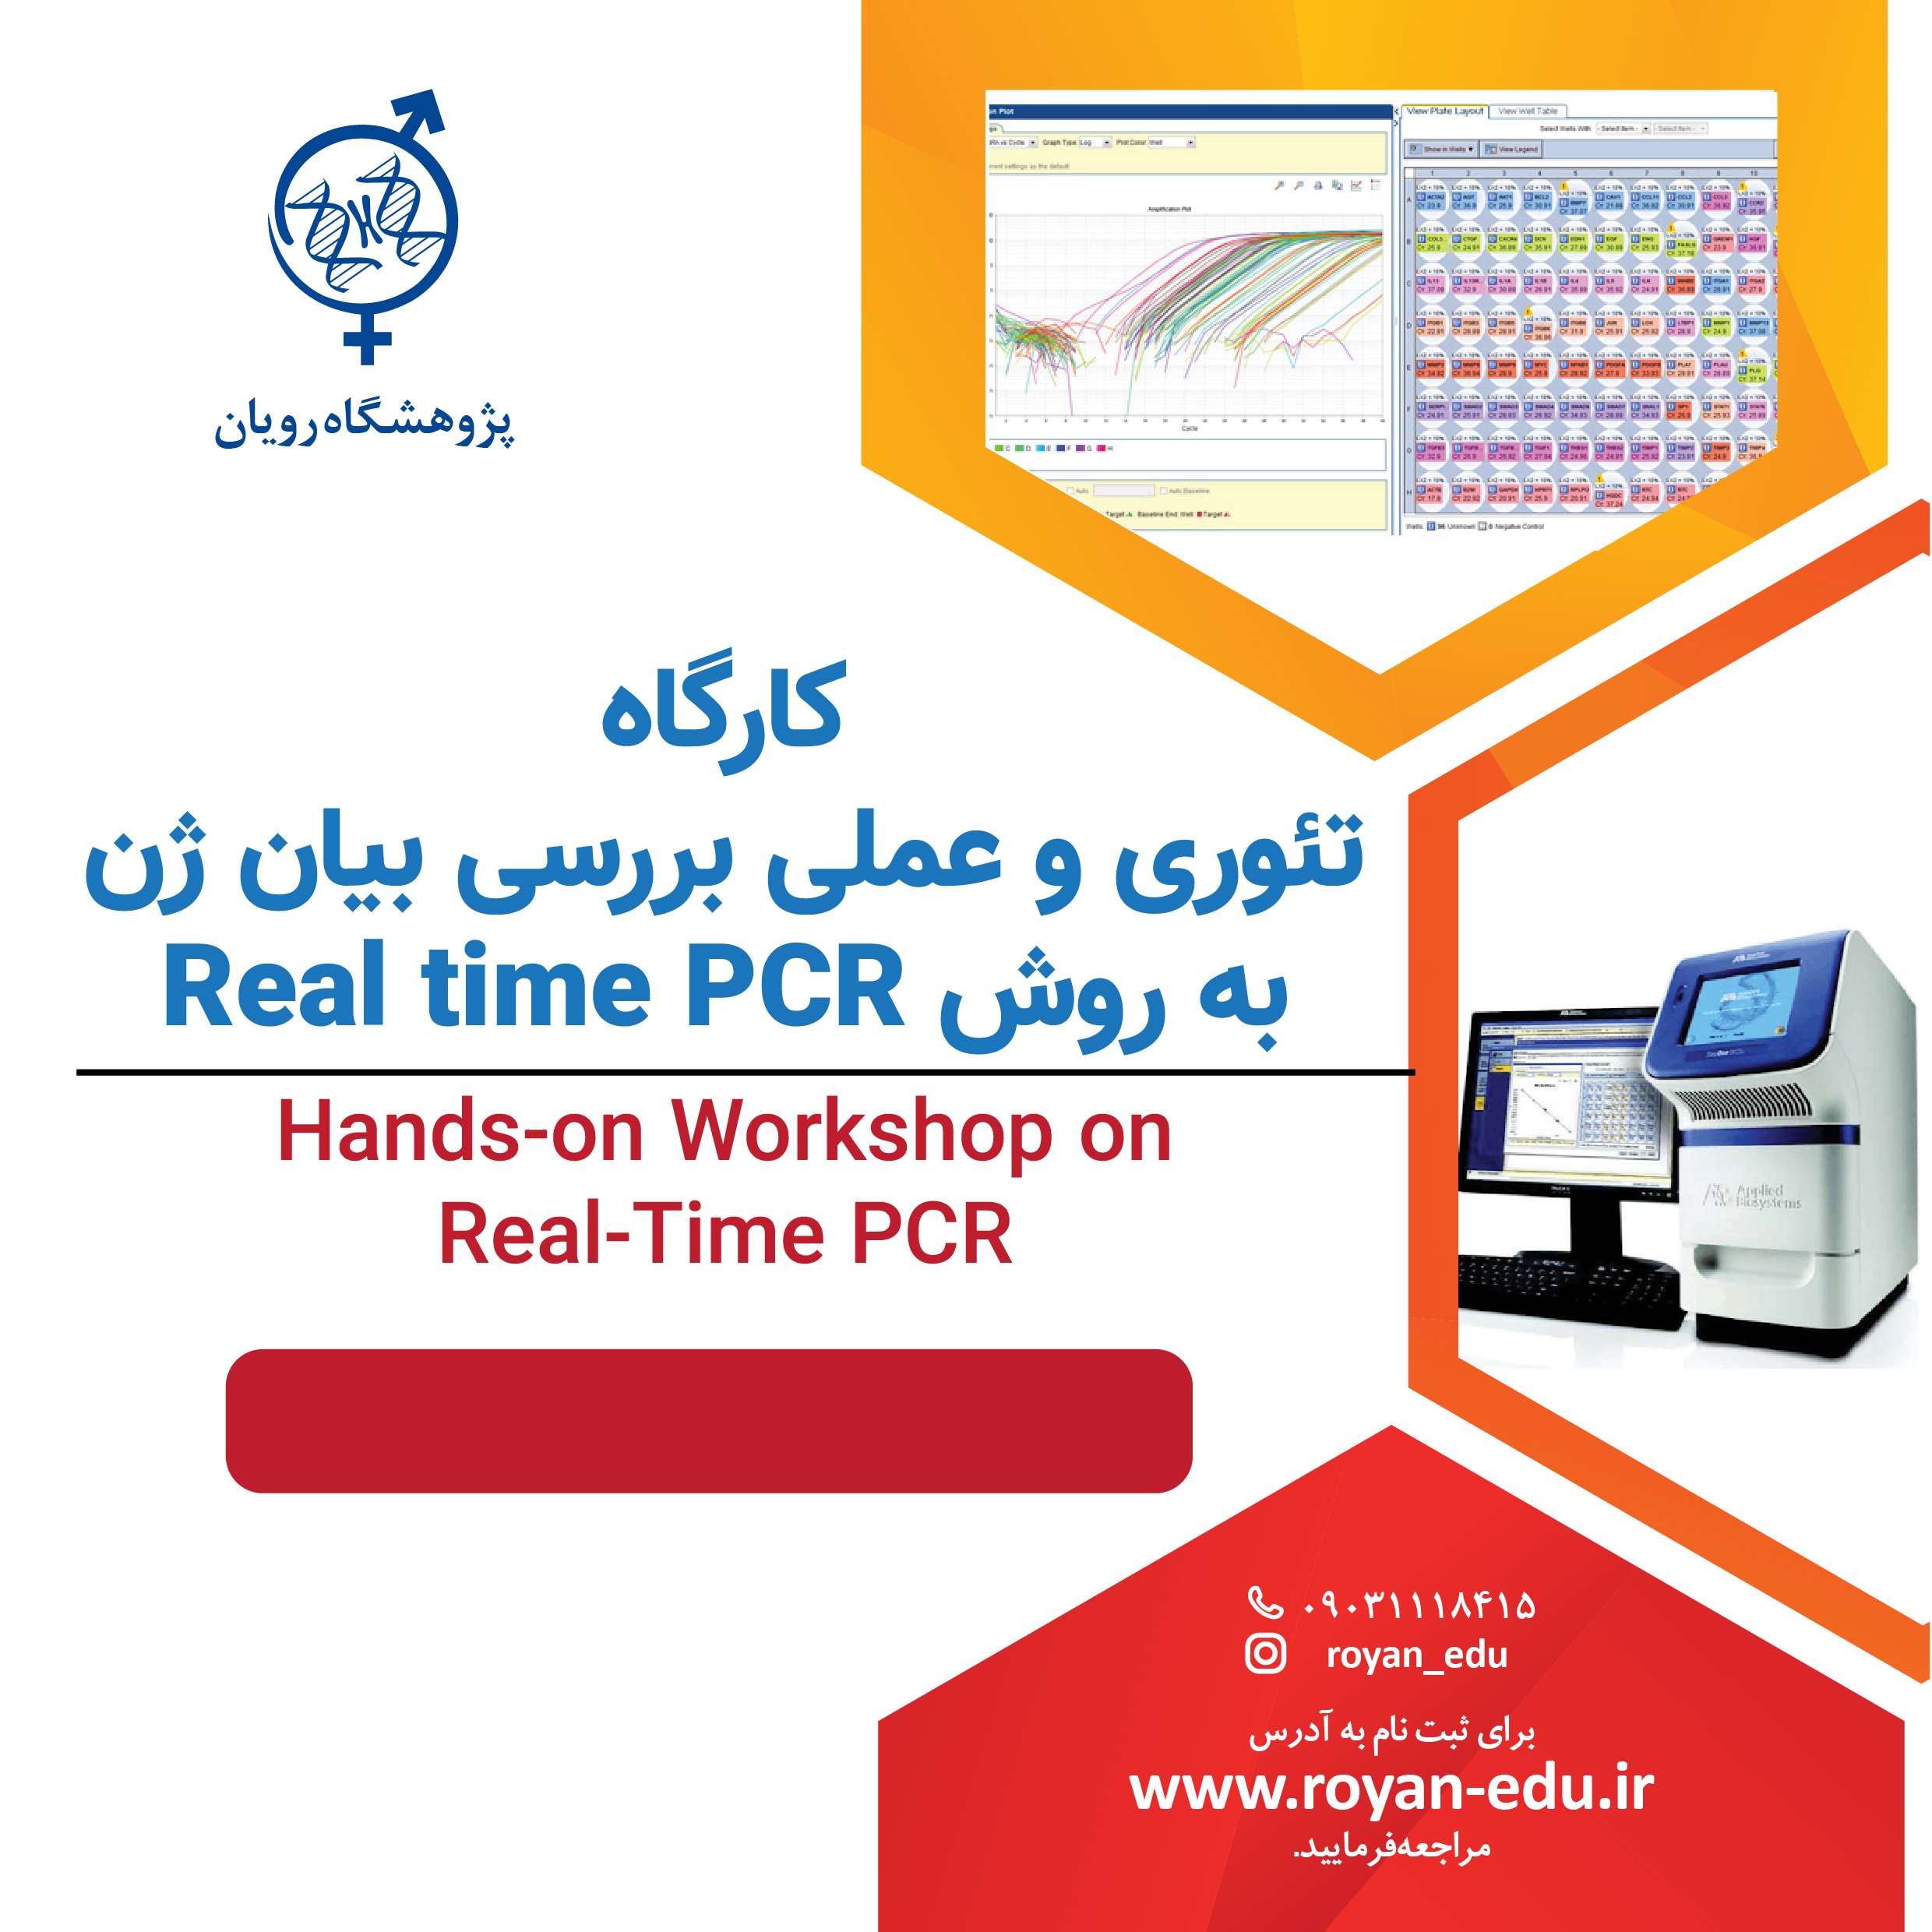 كارگاه تئوری و عملی بررسی بیان ژن به روش Real time PCR 5